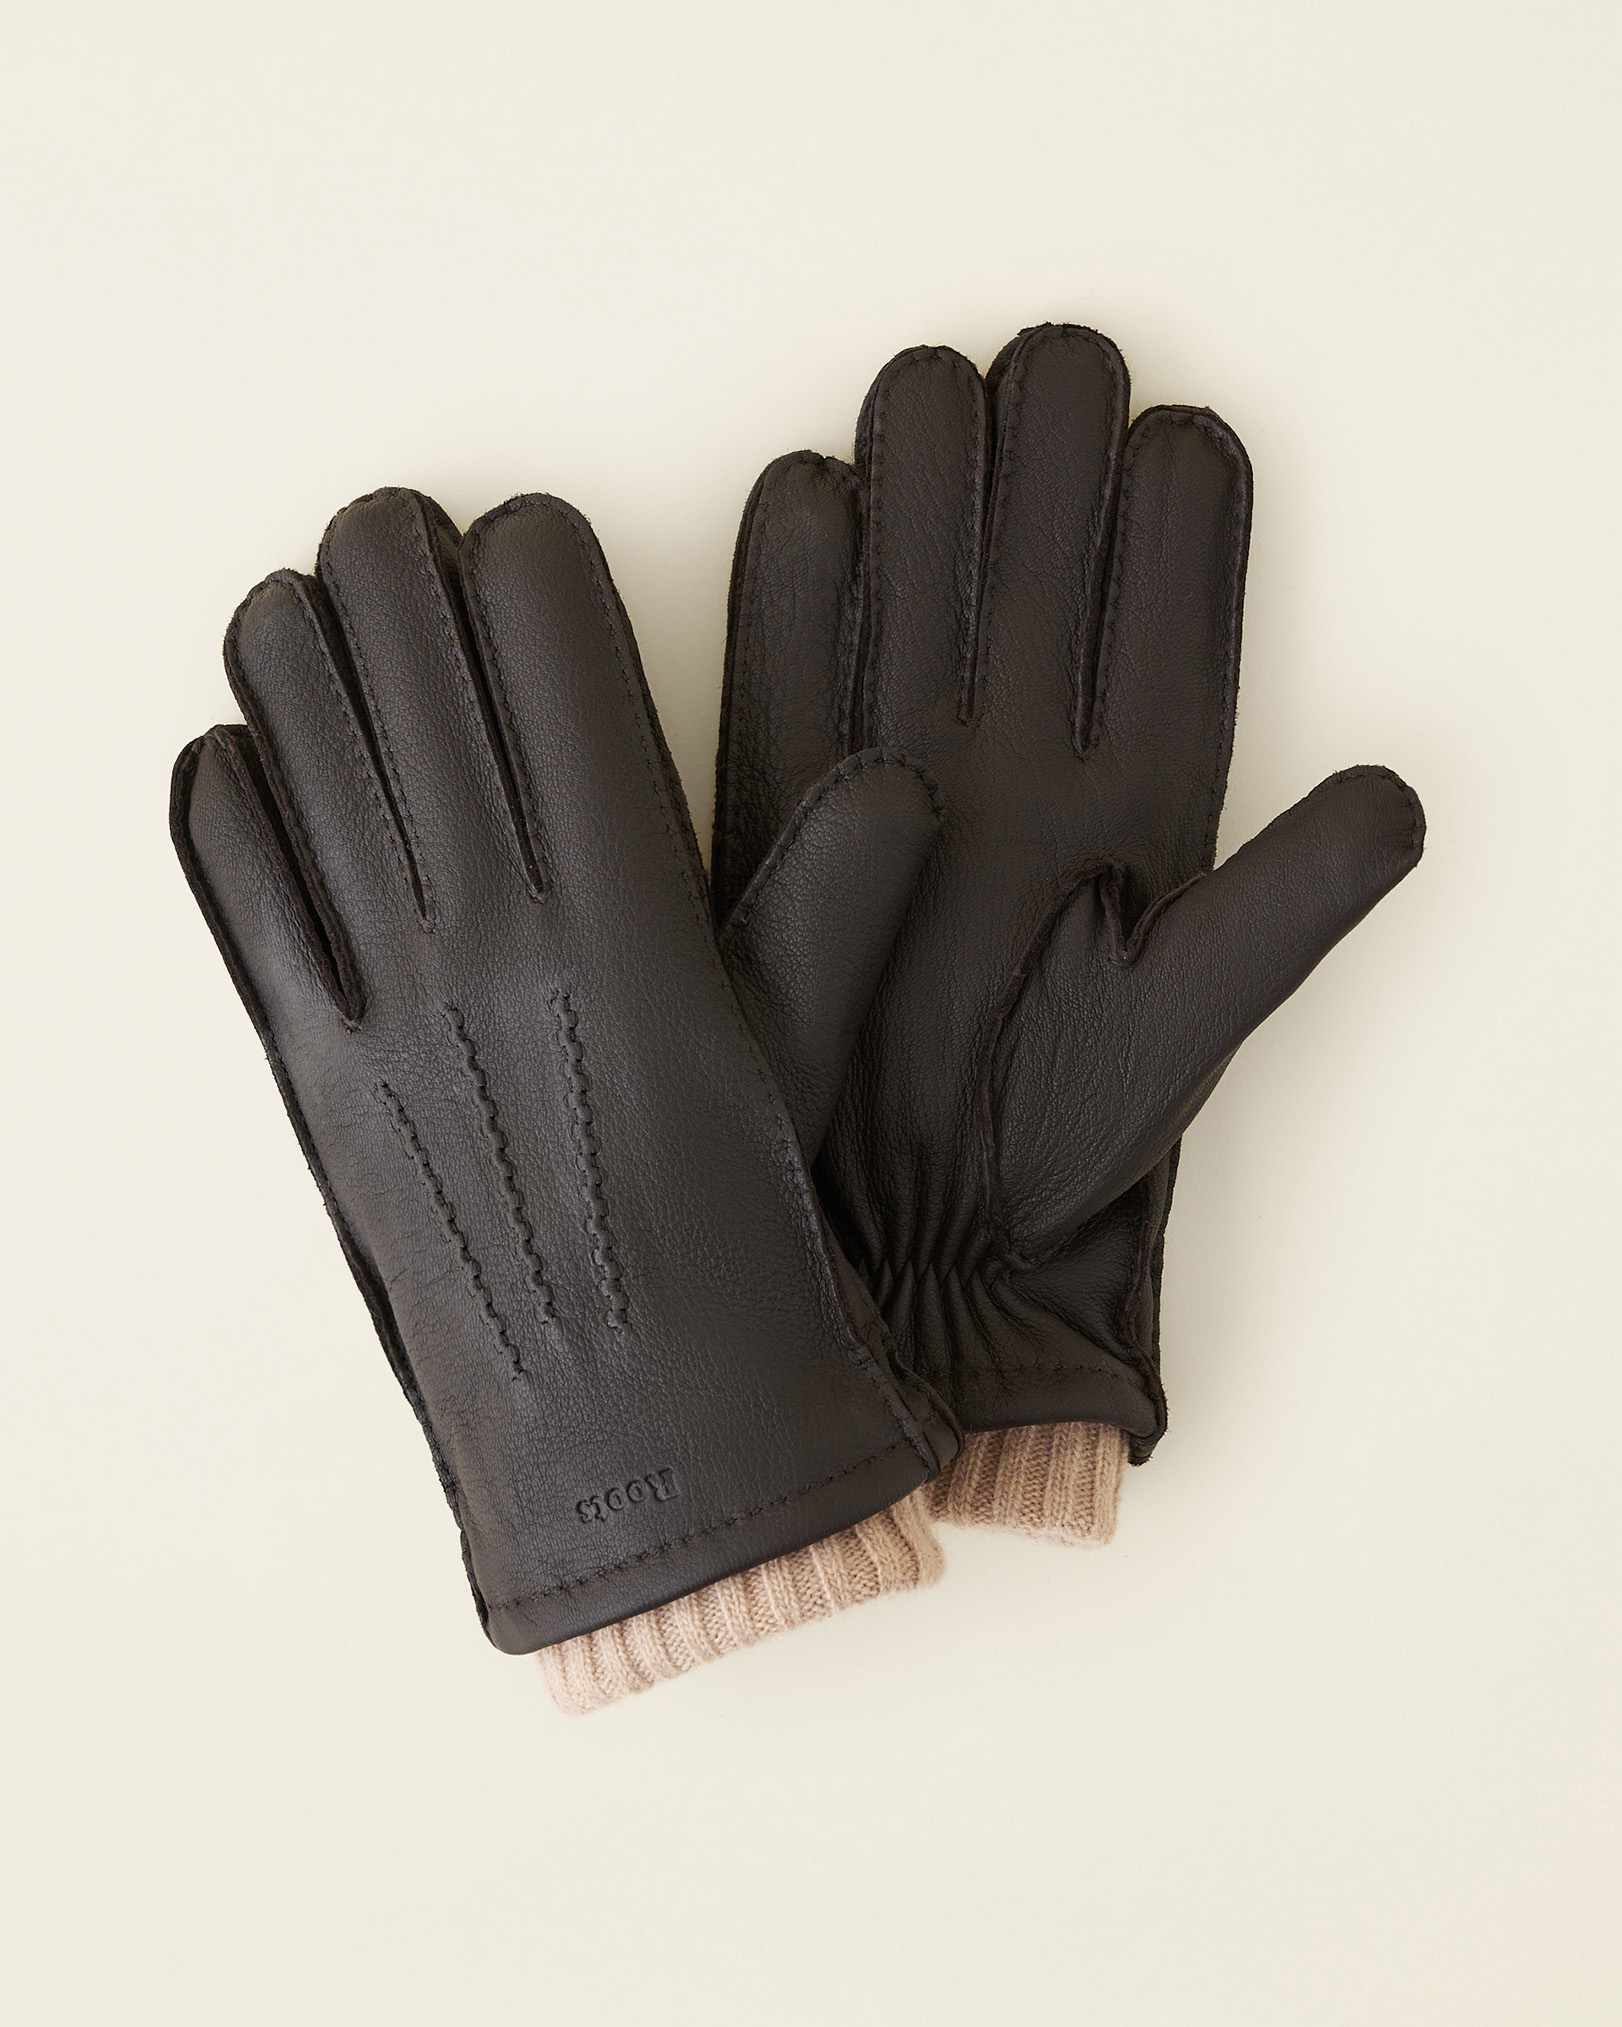 Roots Men's Cuff Deerskin Glove in Dark Brown